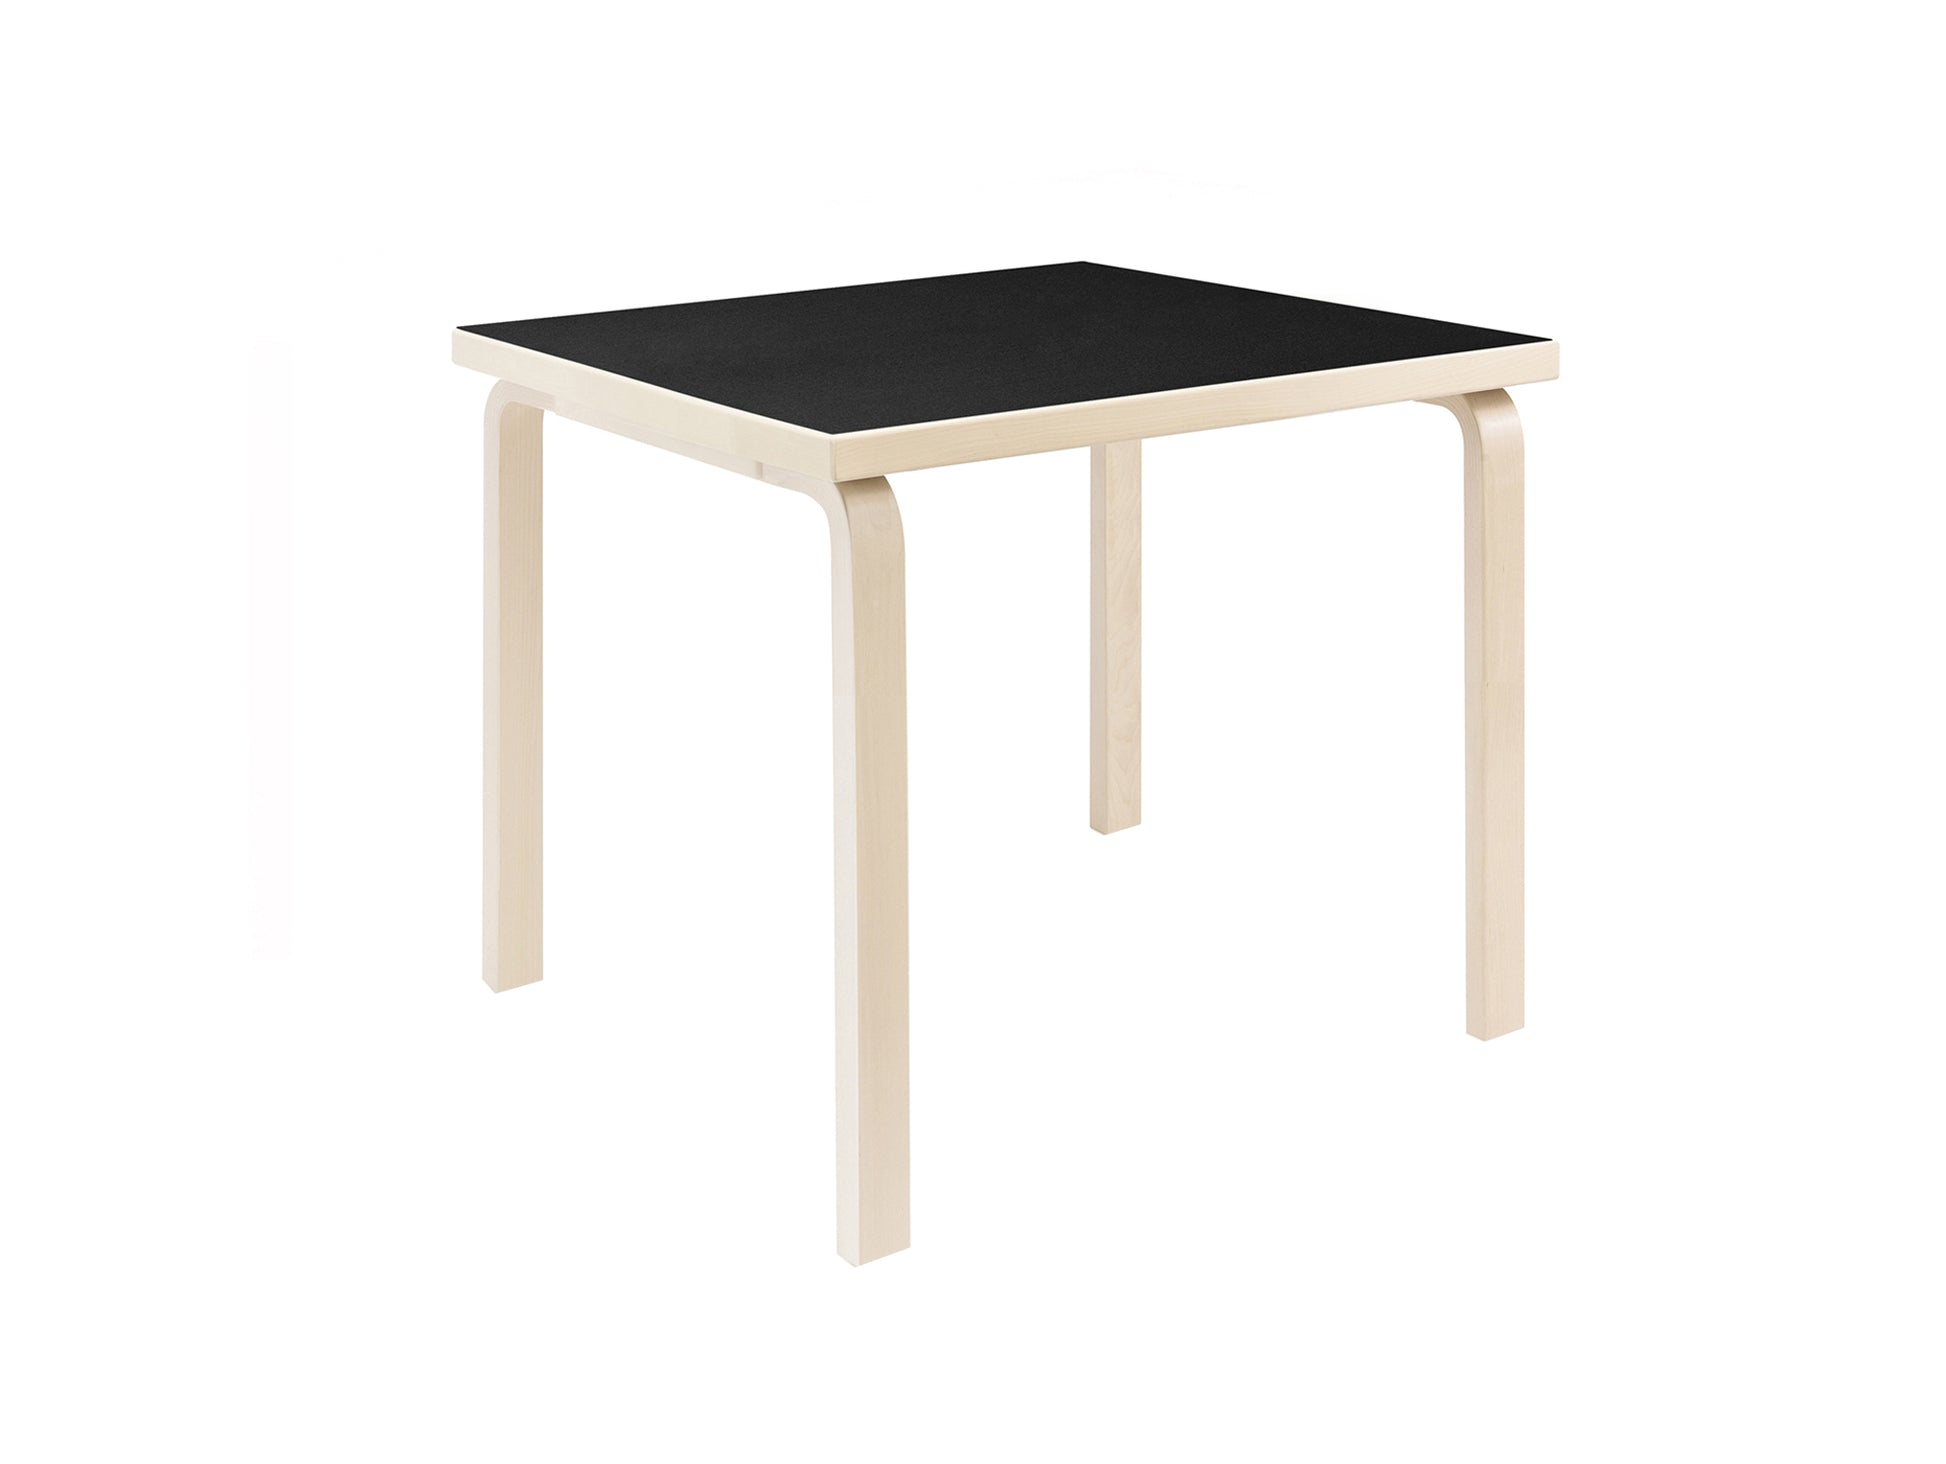 Aalto Table Square by Artek - 81C (75 x 75 cm)